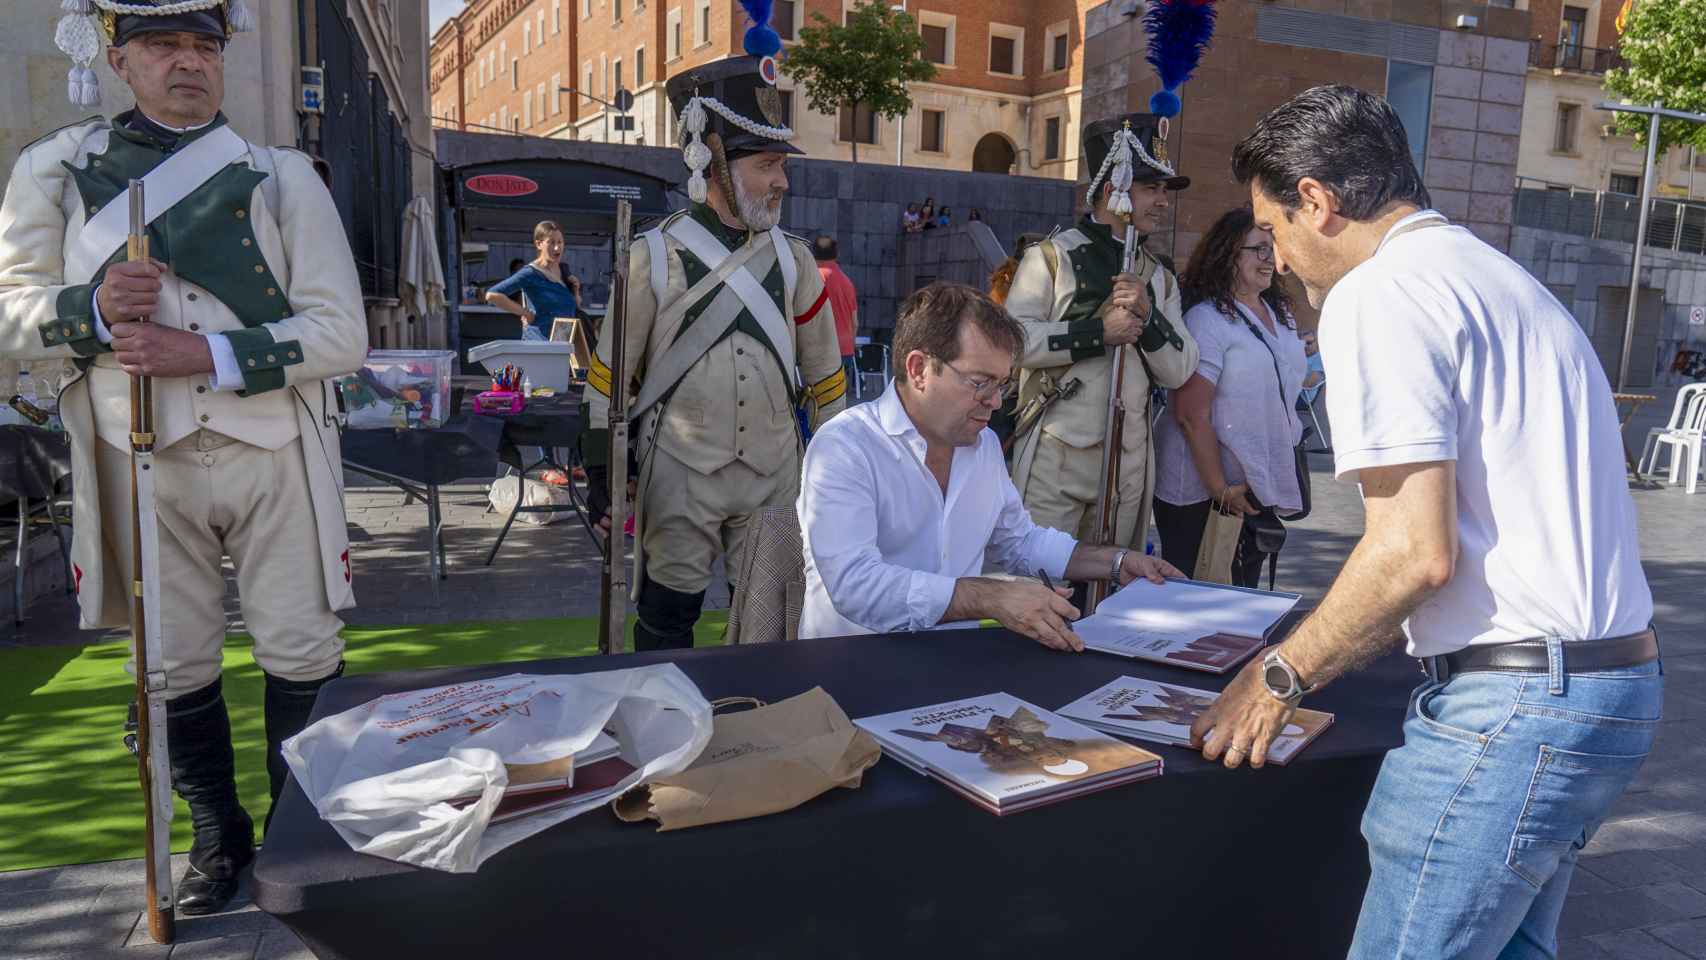 El escritor Javier Sierra firma ejemplares de la adaptación de su libro al cómic, La pirámide inmortal, durante la VII Fería del Libro y el Cómic de Teruel. EFE /Antonio García